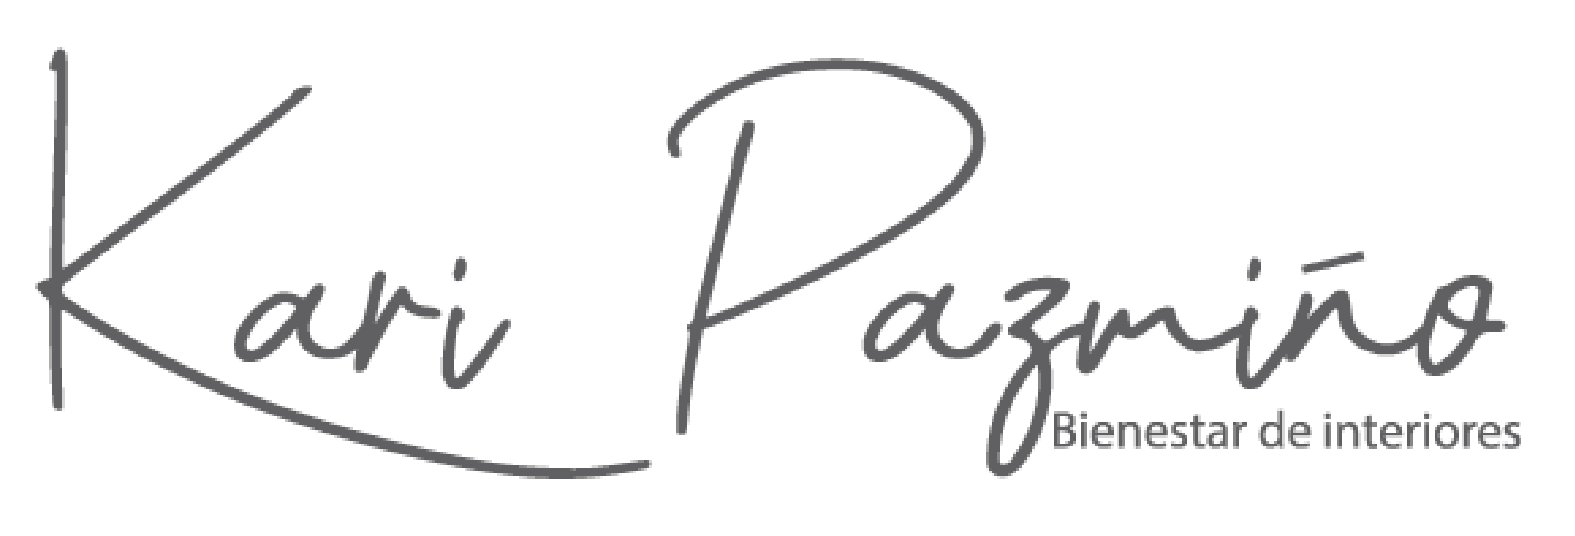 Logotipo del sitio